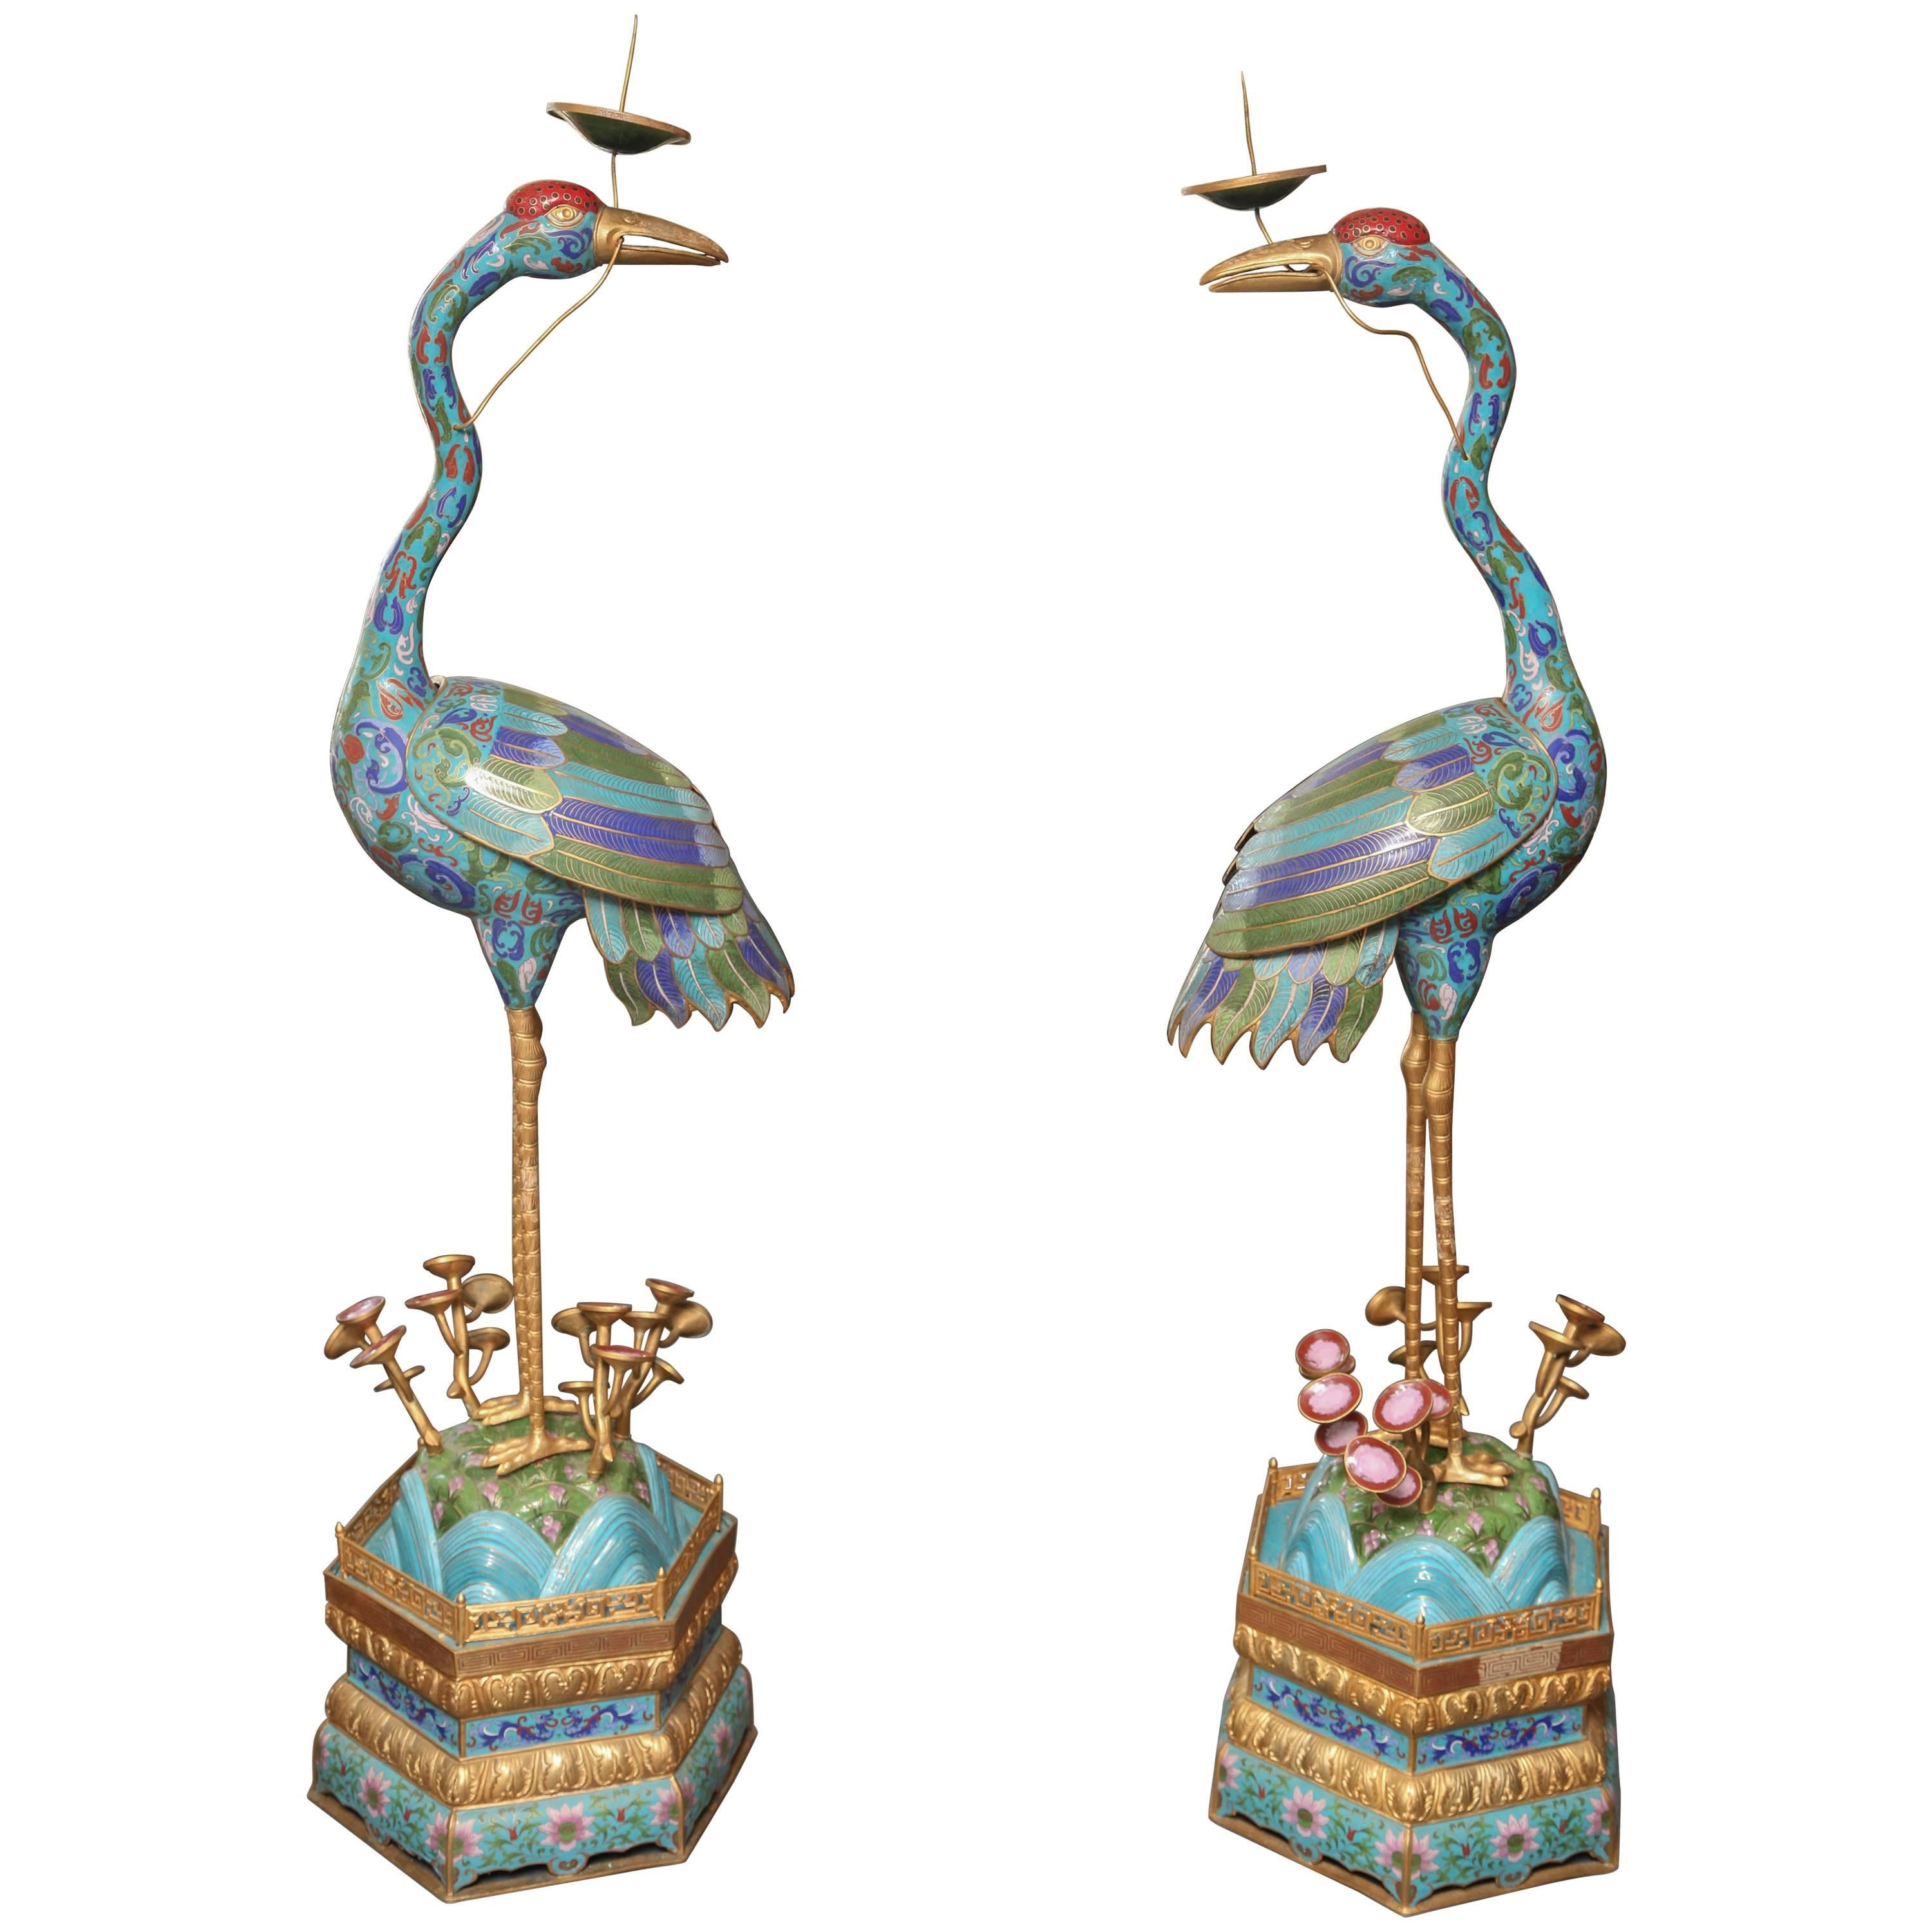 Pair of Life Size Cloisonné Cranes